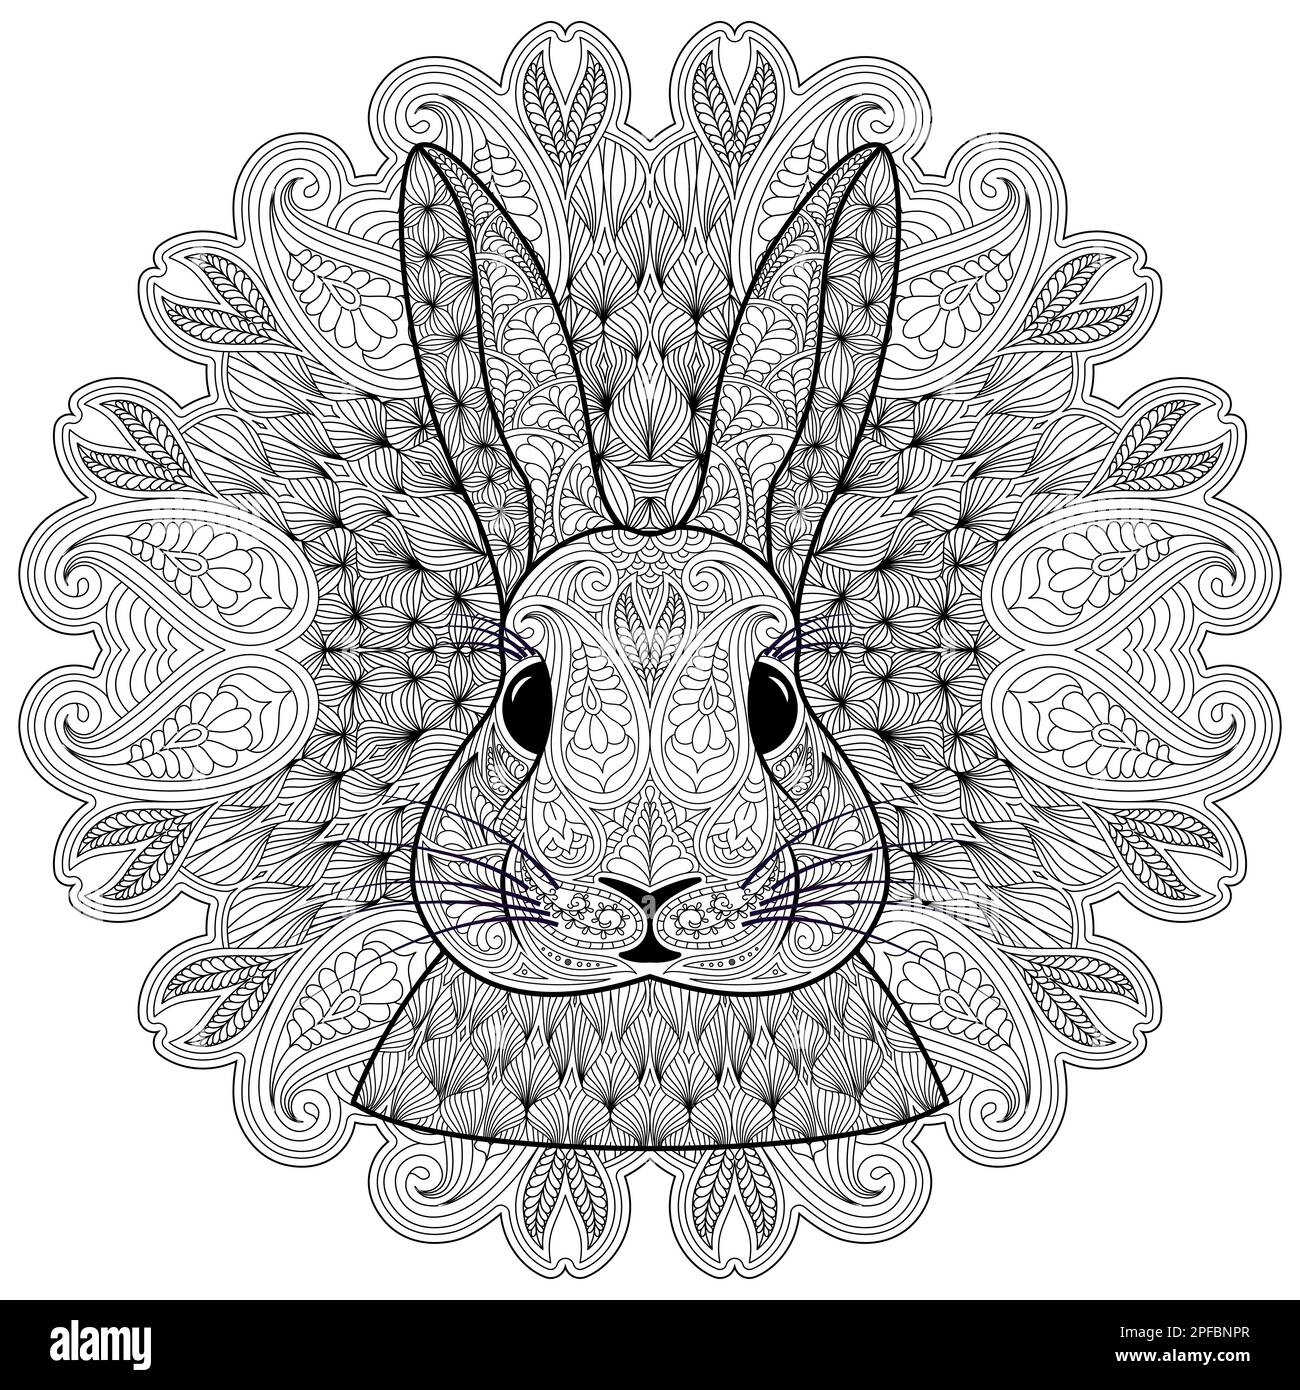 Testa di coniglio a motivi geometrici e mandala circolare Paisley elementi ispirati allo Zentangle. Motivi decorativi in stile etnico indiano orientale Henna, Mehnd Illustrazione Vettoriale